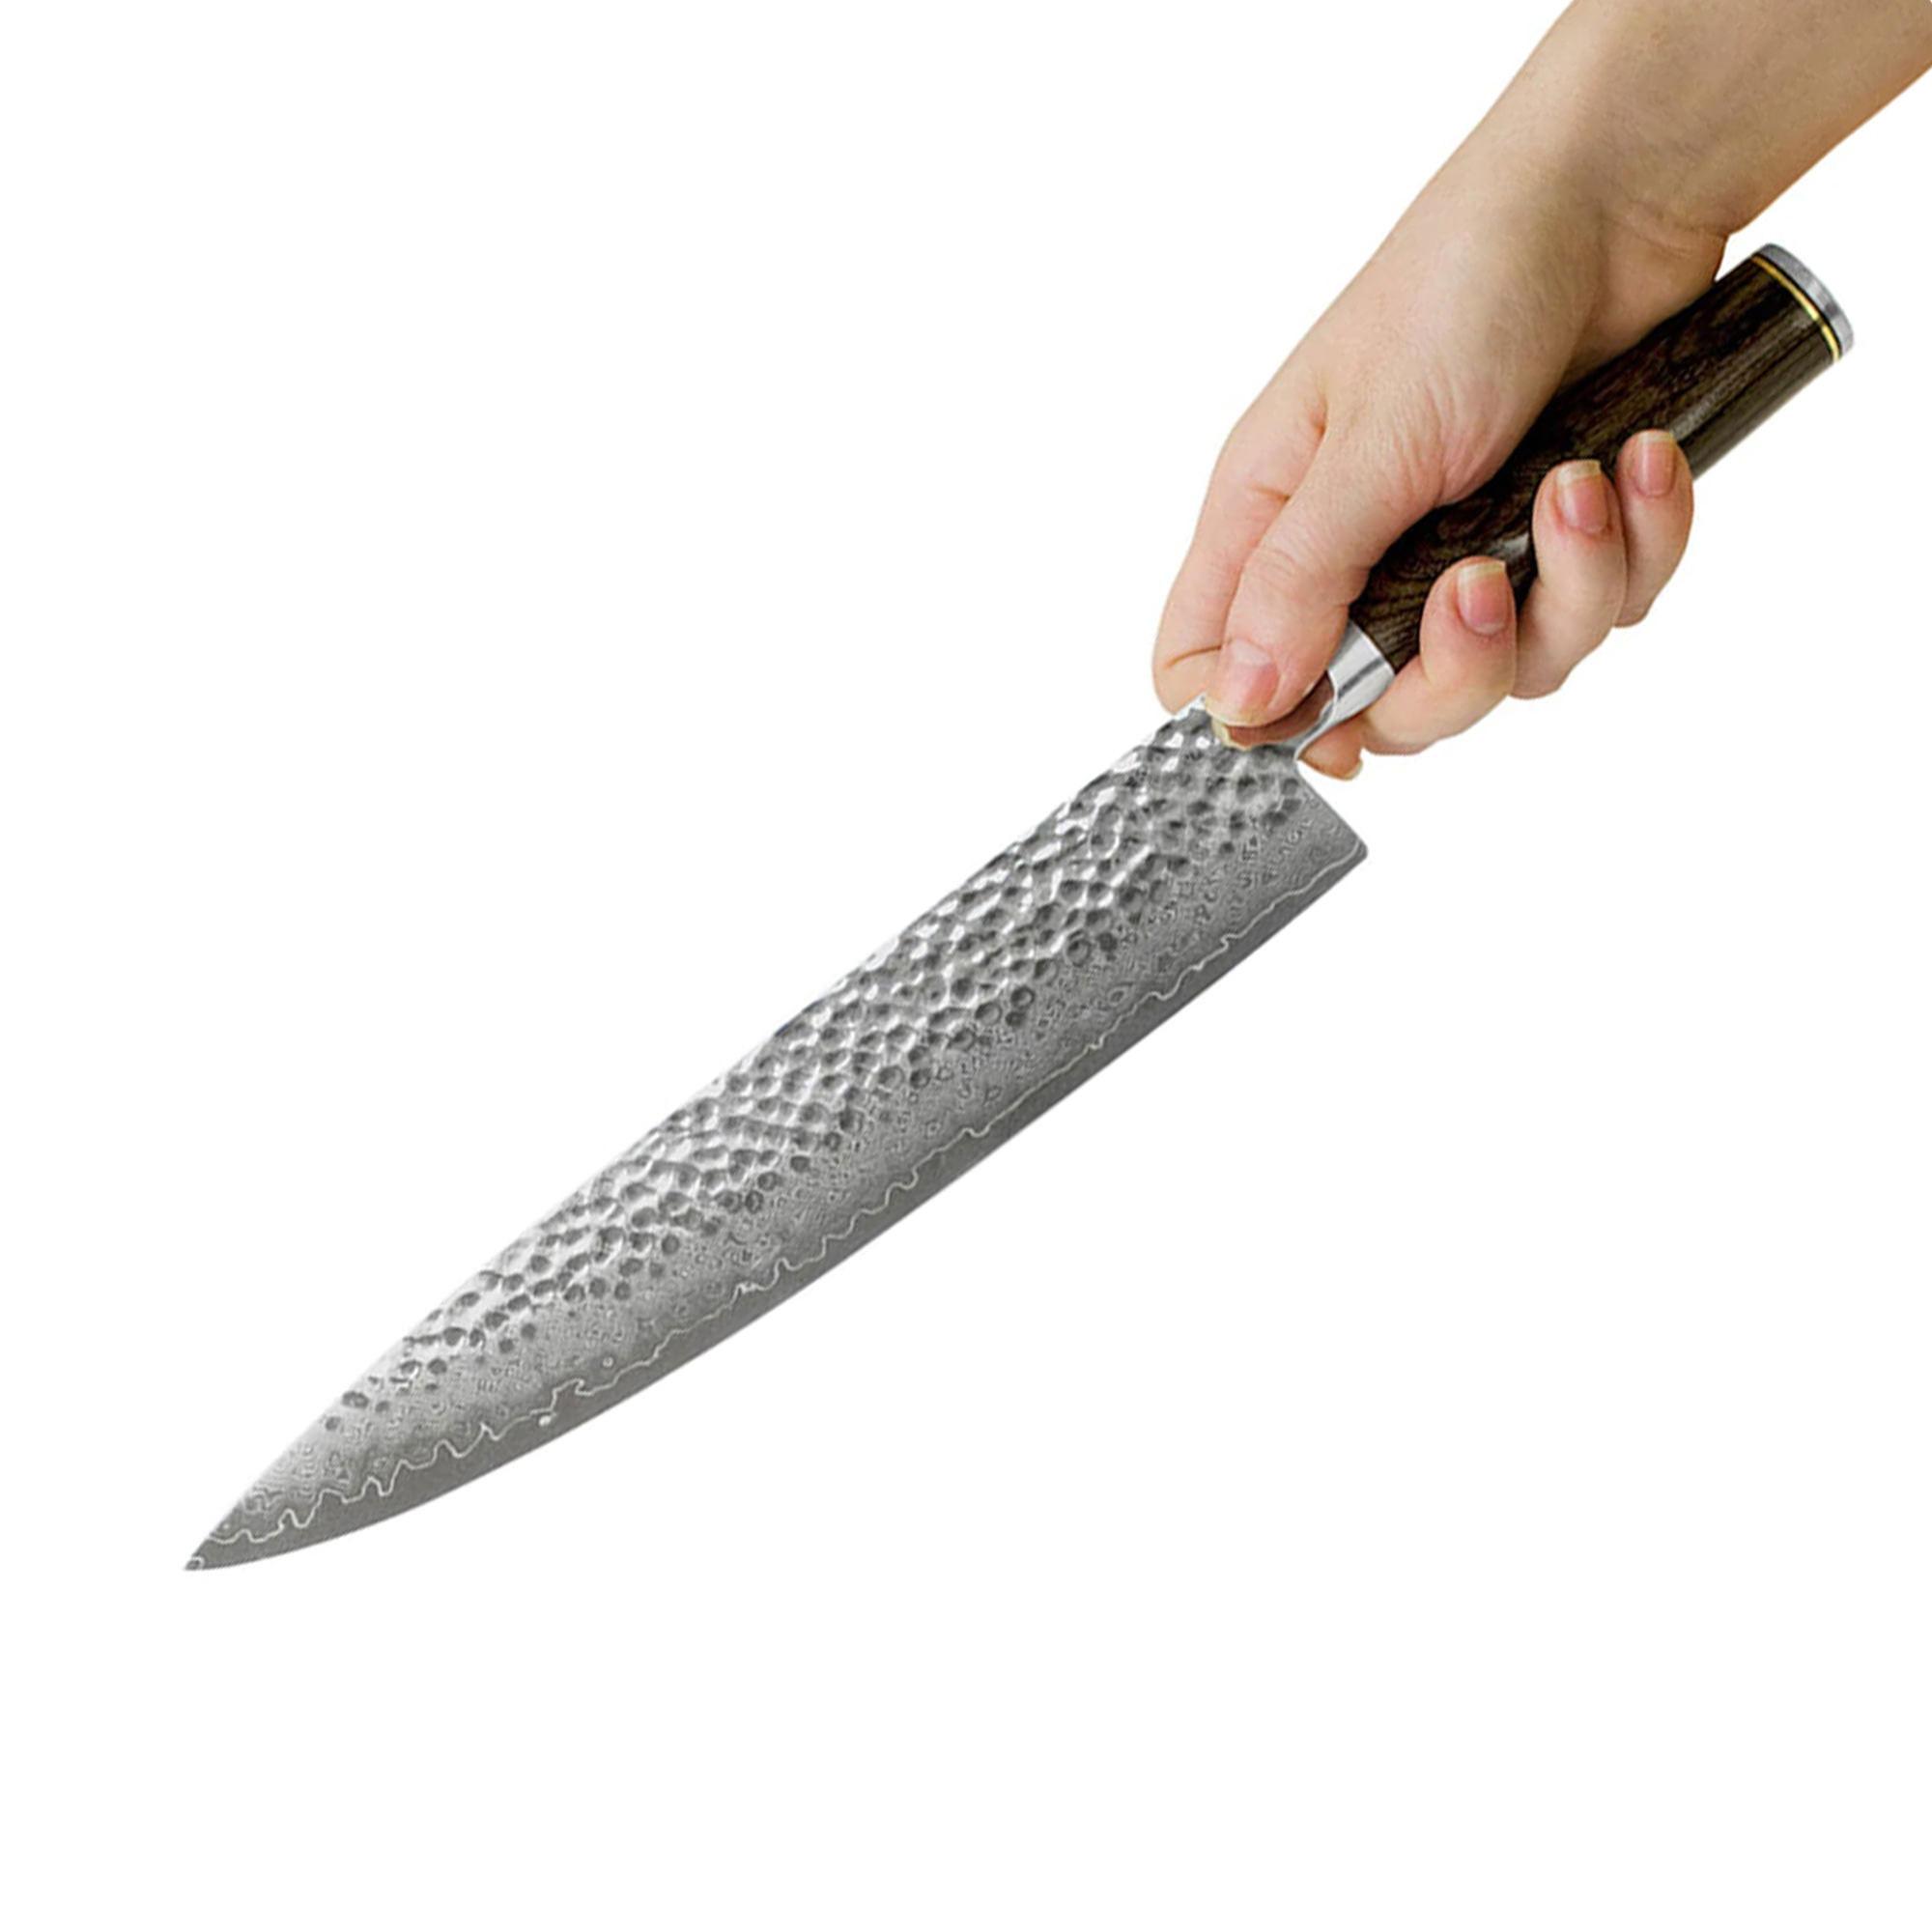 Shun Premier Chef's Knife 25cm Image 3